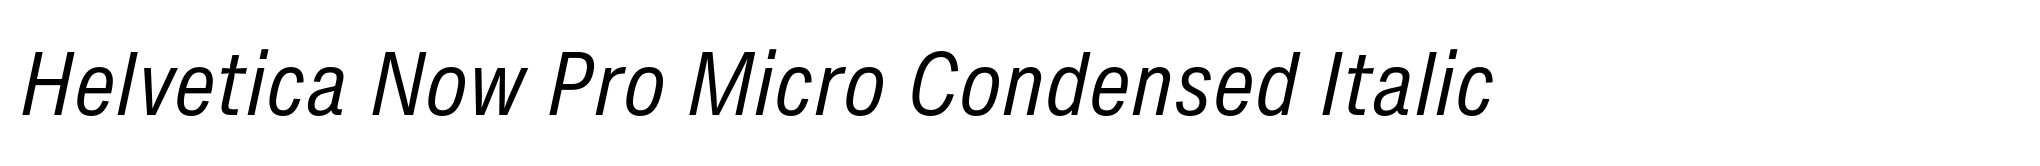 Helvetica Now Pro Micro Condensed Italic image